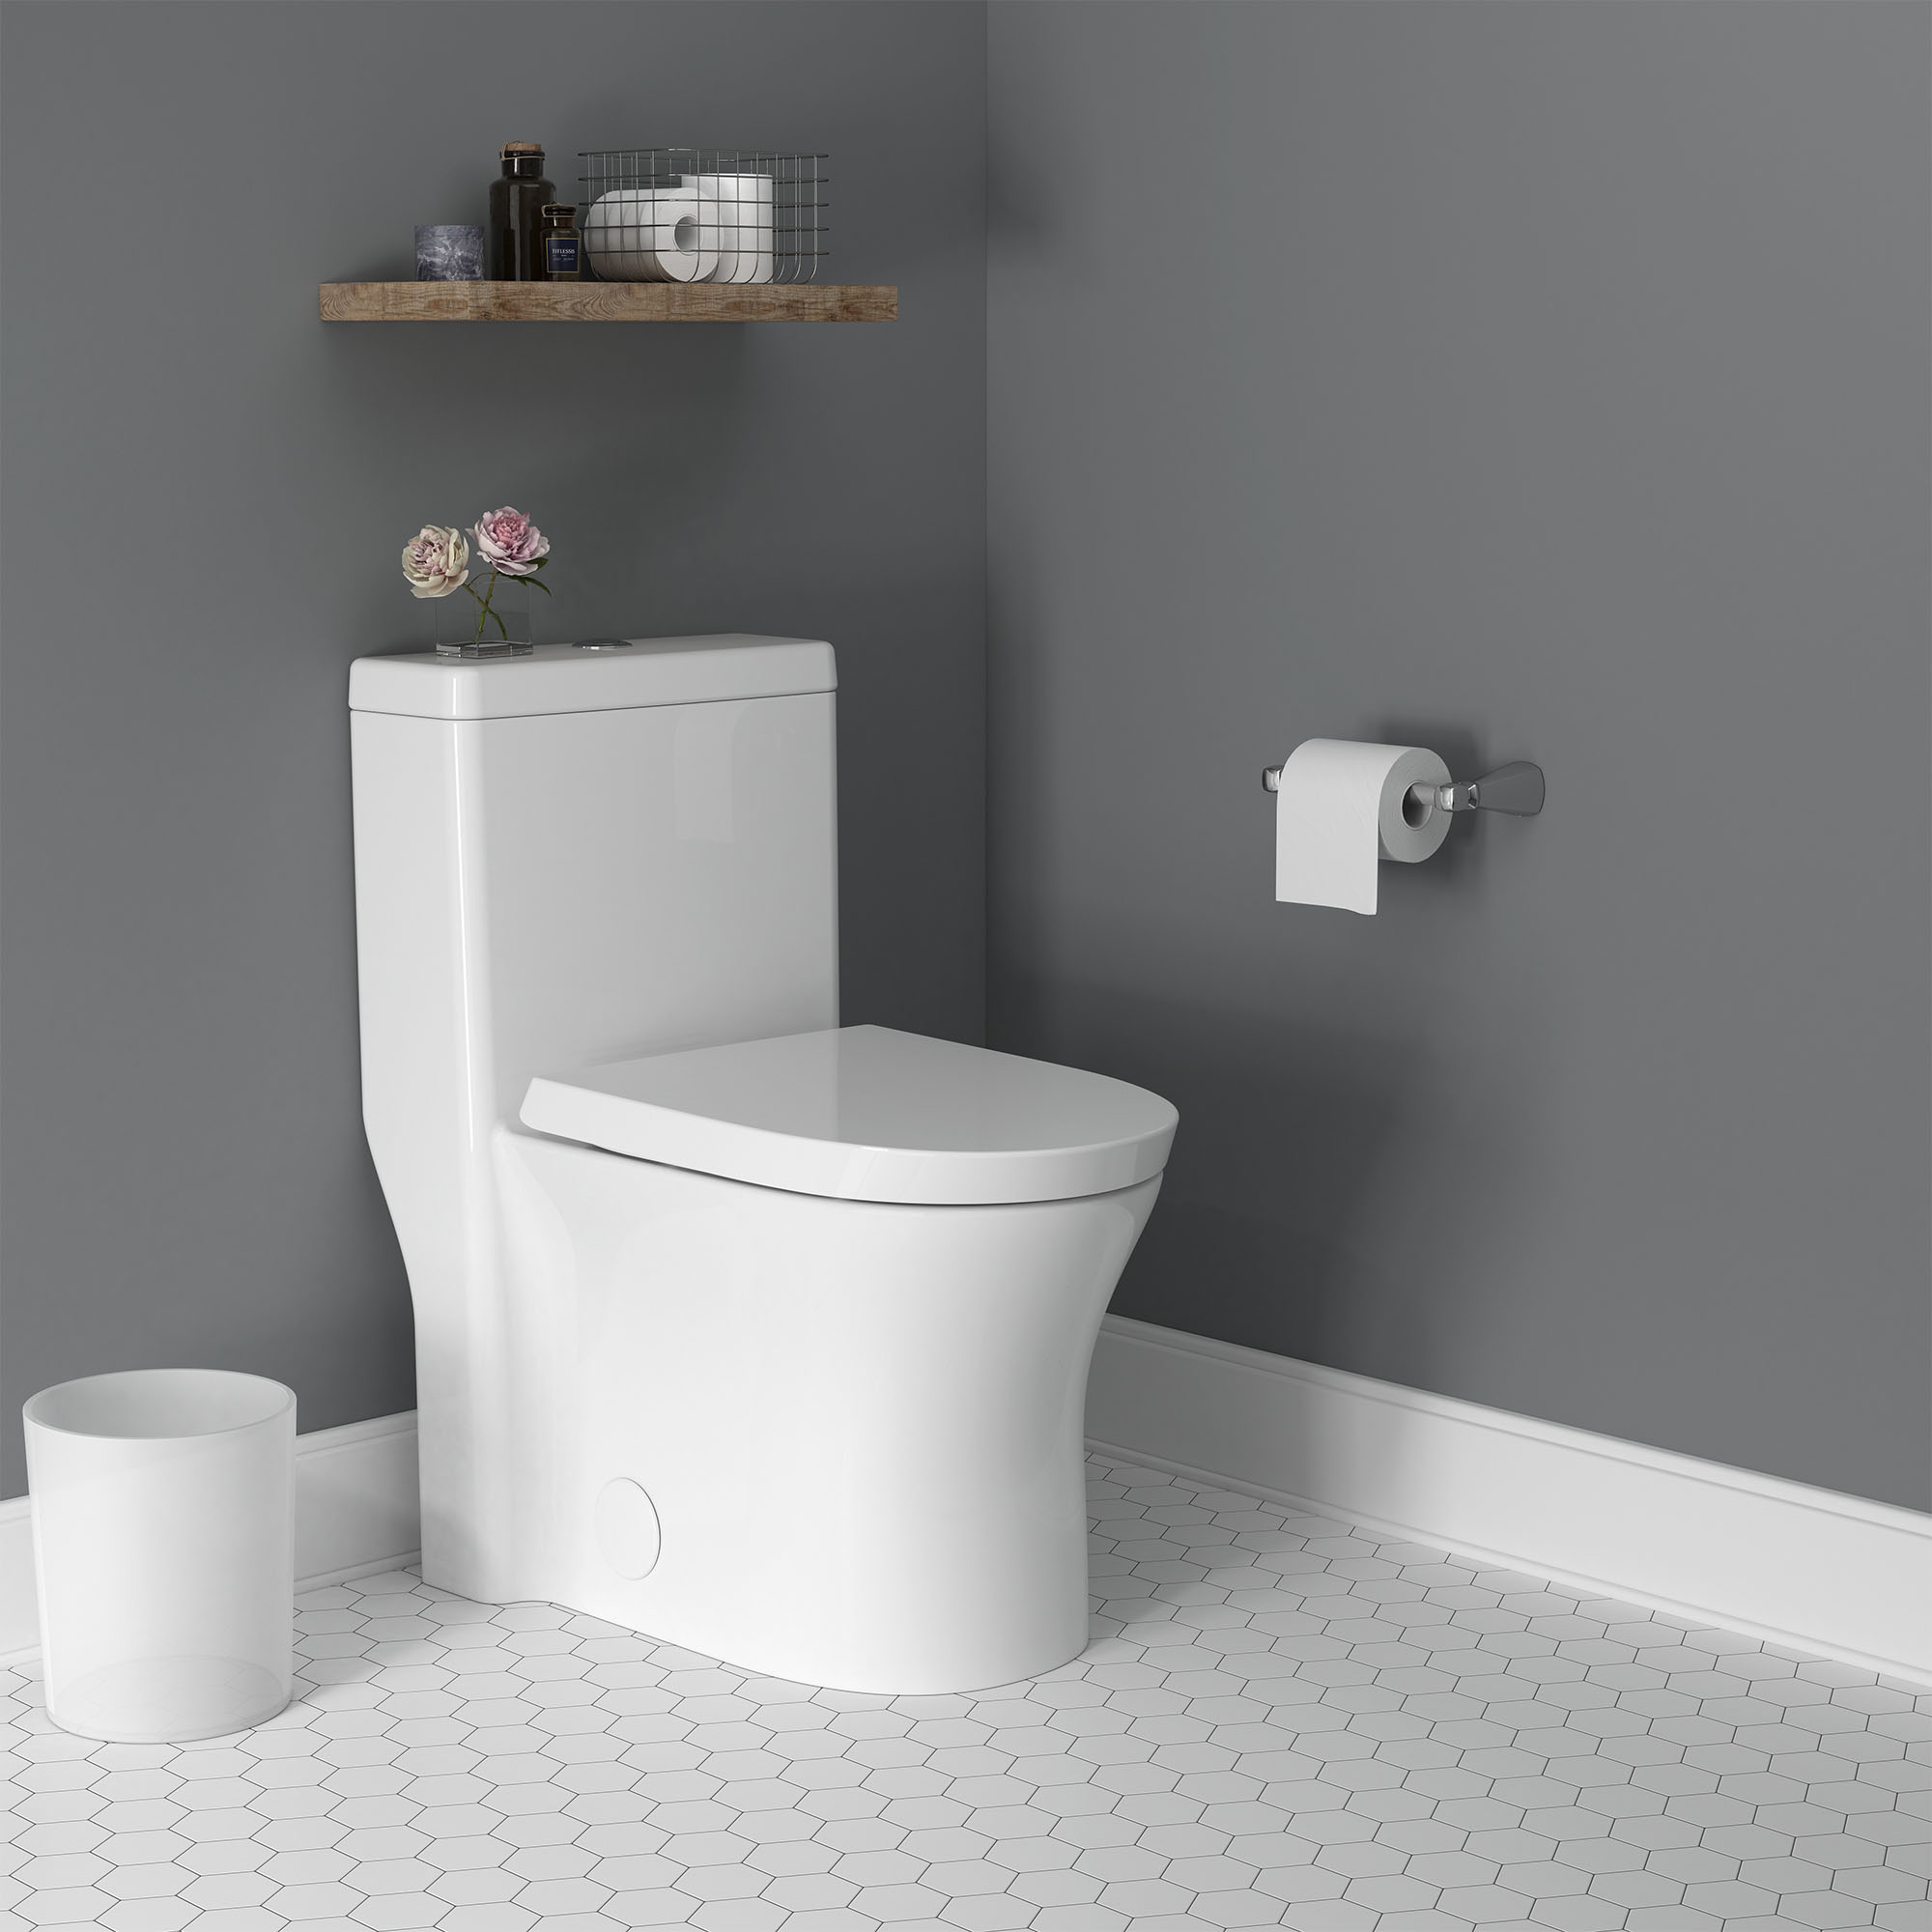 Toilette Cosette complète allongée avec siège, hauteur régulière, à double chasse, monopièce, 1,28 gpc/4,8 Lpc et 0,92 gpc/3,5 Lpc